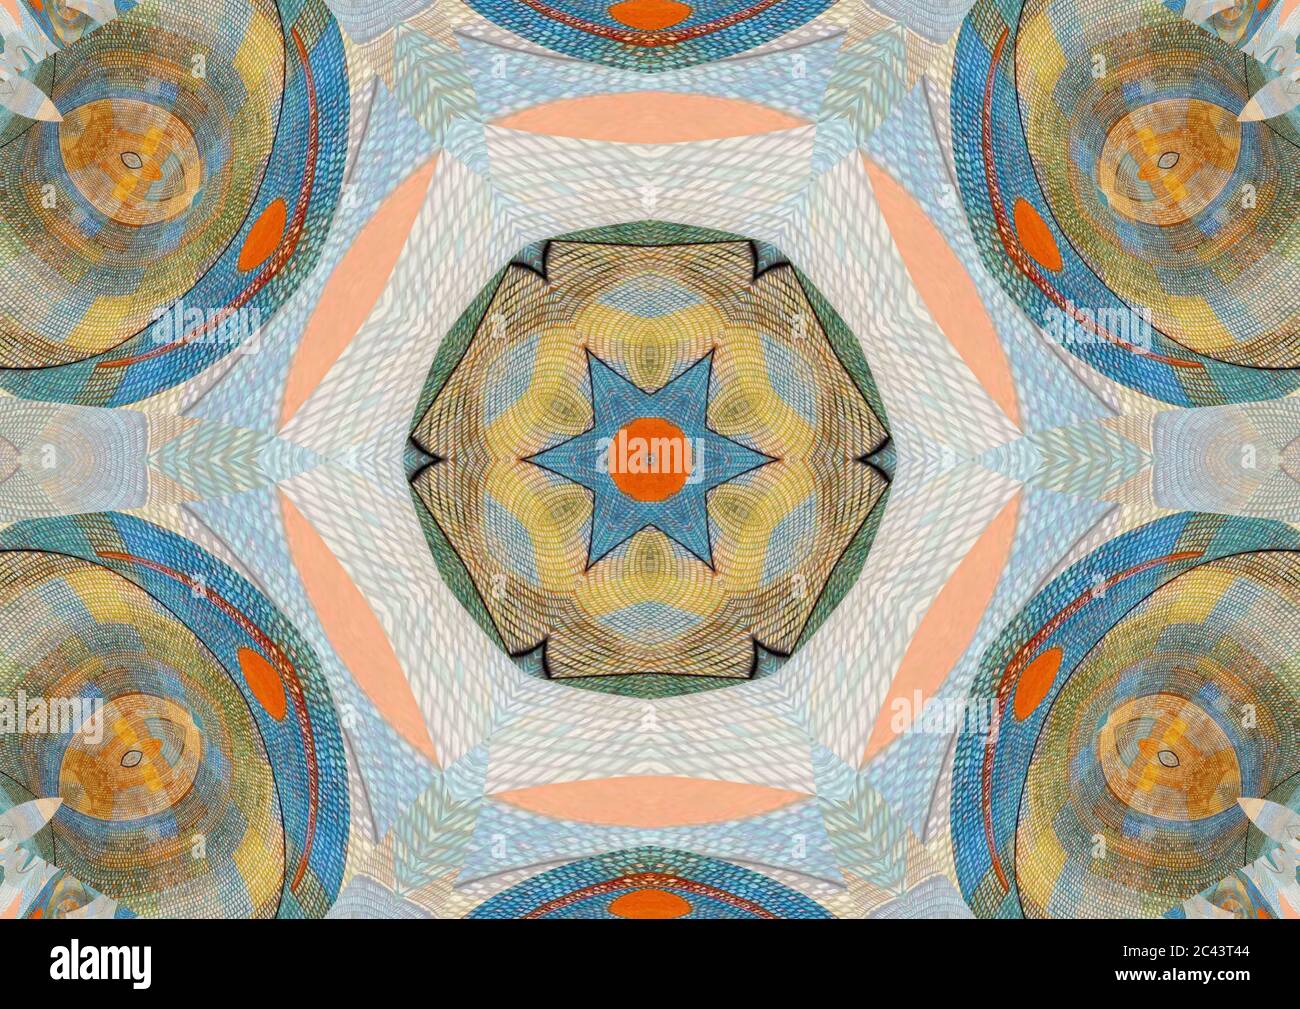 Mandala creò usando i colori muti di ad Parnassum (1932) l'opera d'arte considerata il capolavoro di Paul Klee. Foto Stock